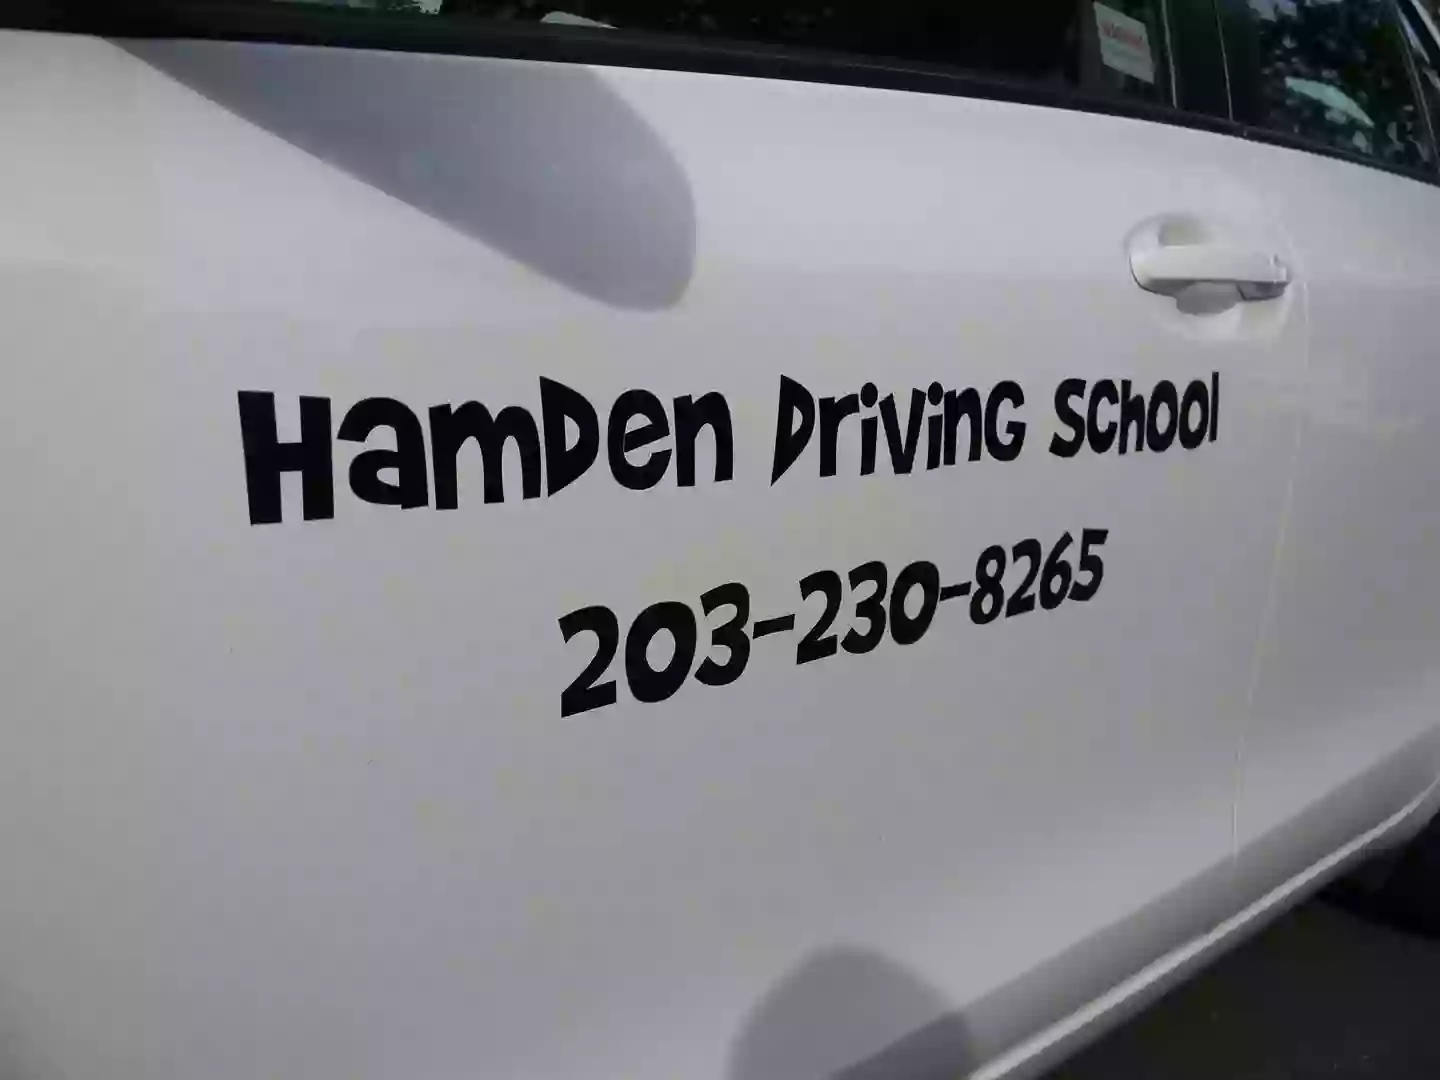 Hamden Driving School